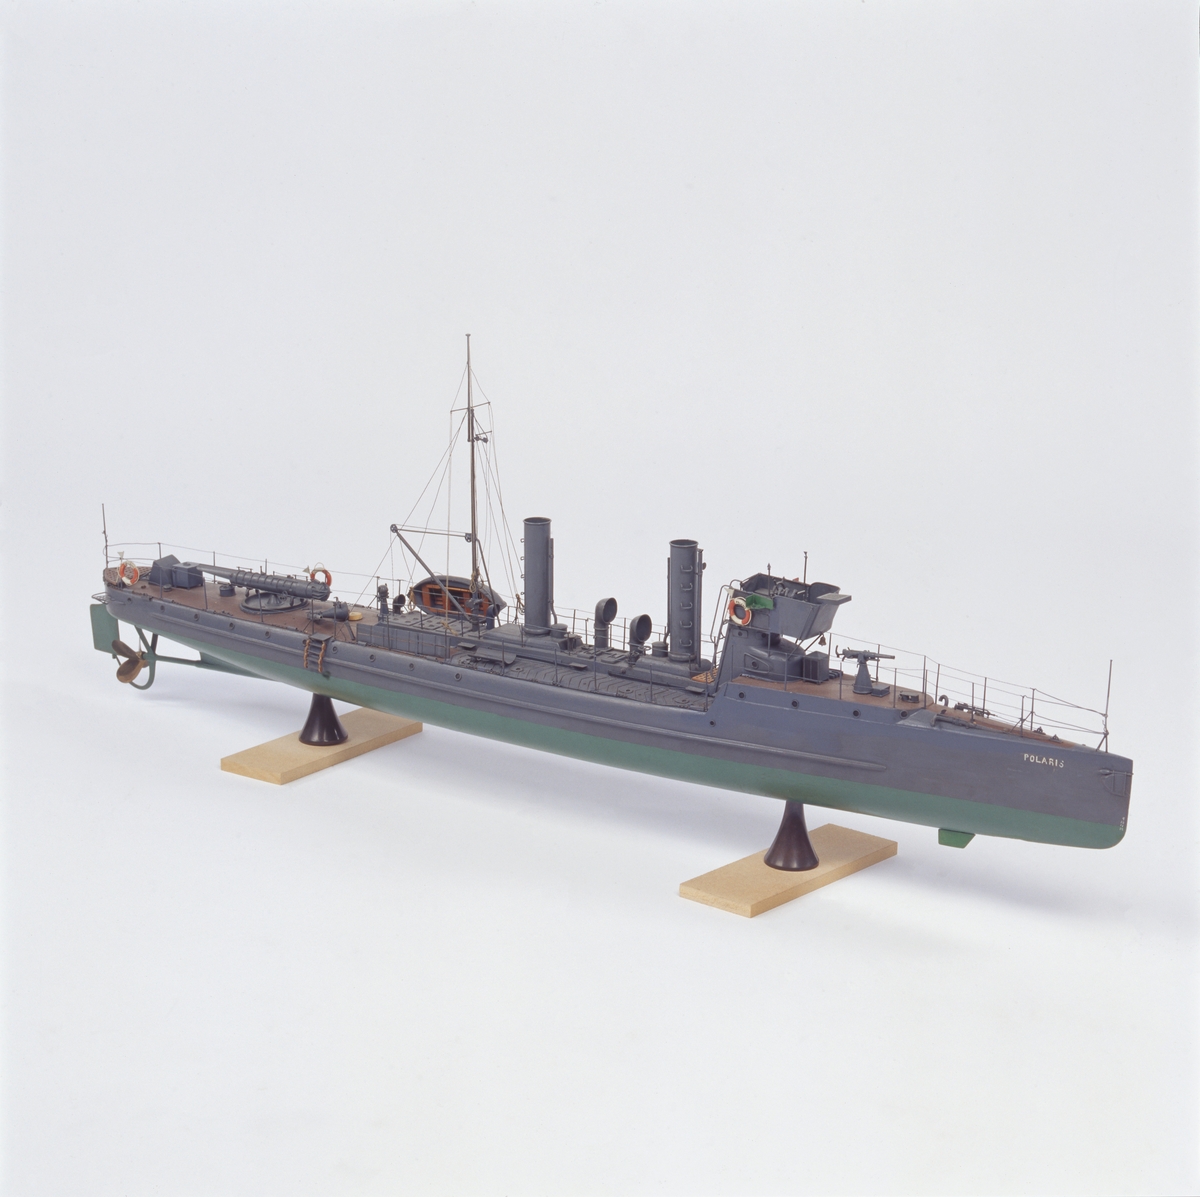 Modell föreställande torpedbåten Polaris. Skrov av trä,  gråmålad,  grön botten. Försedd med urverk som driver propellern. Uppdragning av verket genom aktra skorstenen.